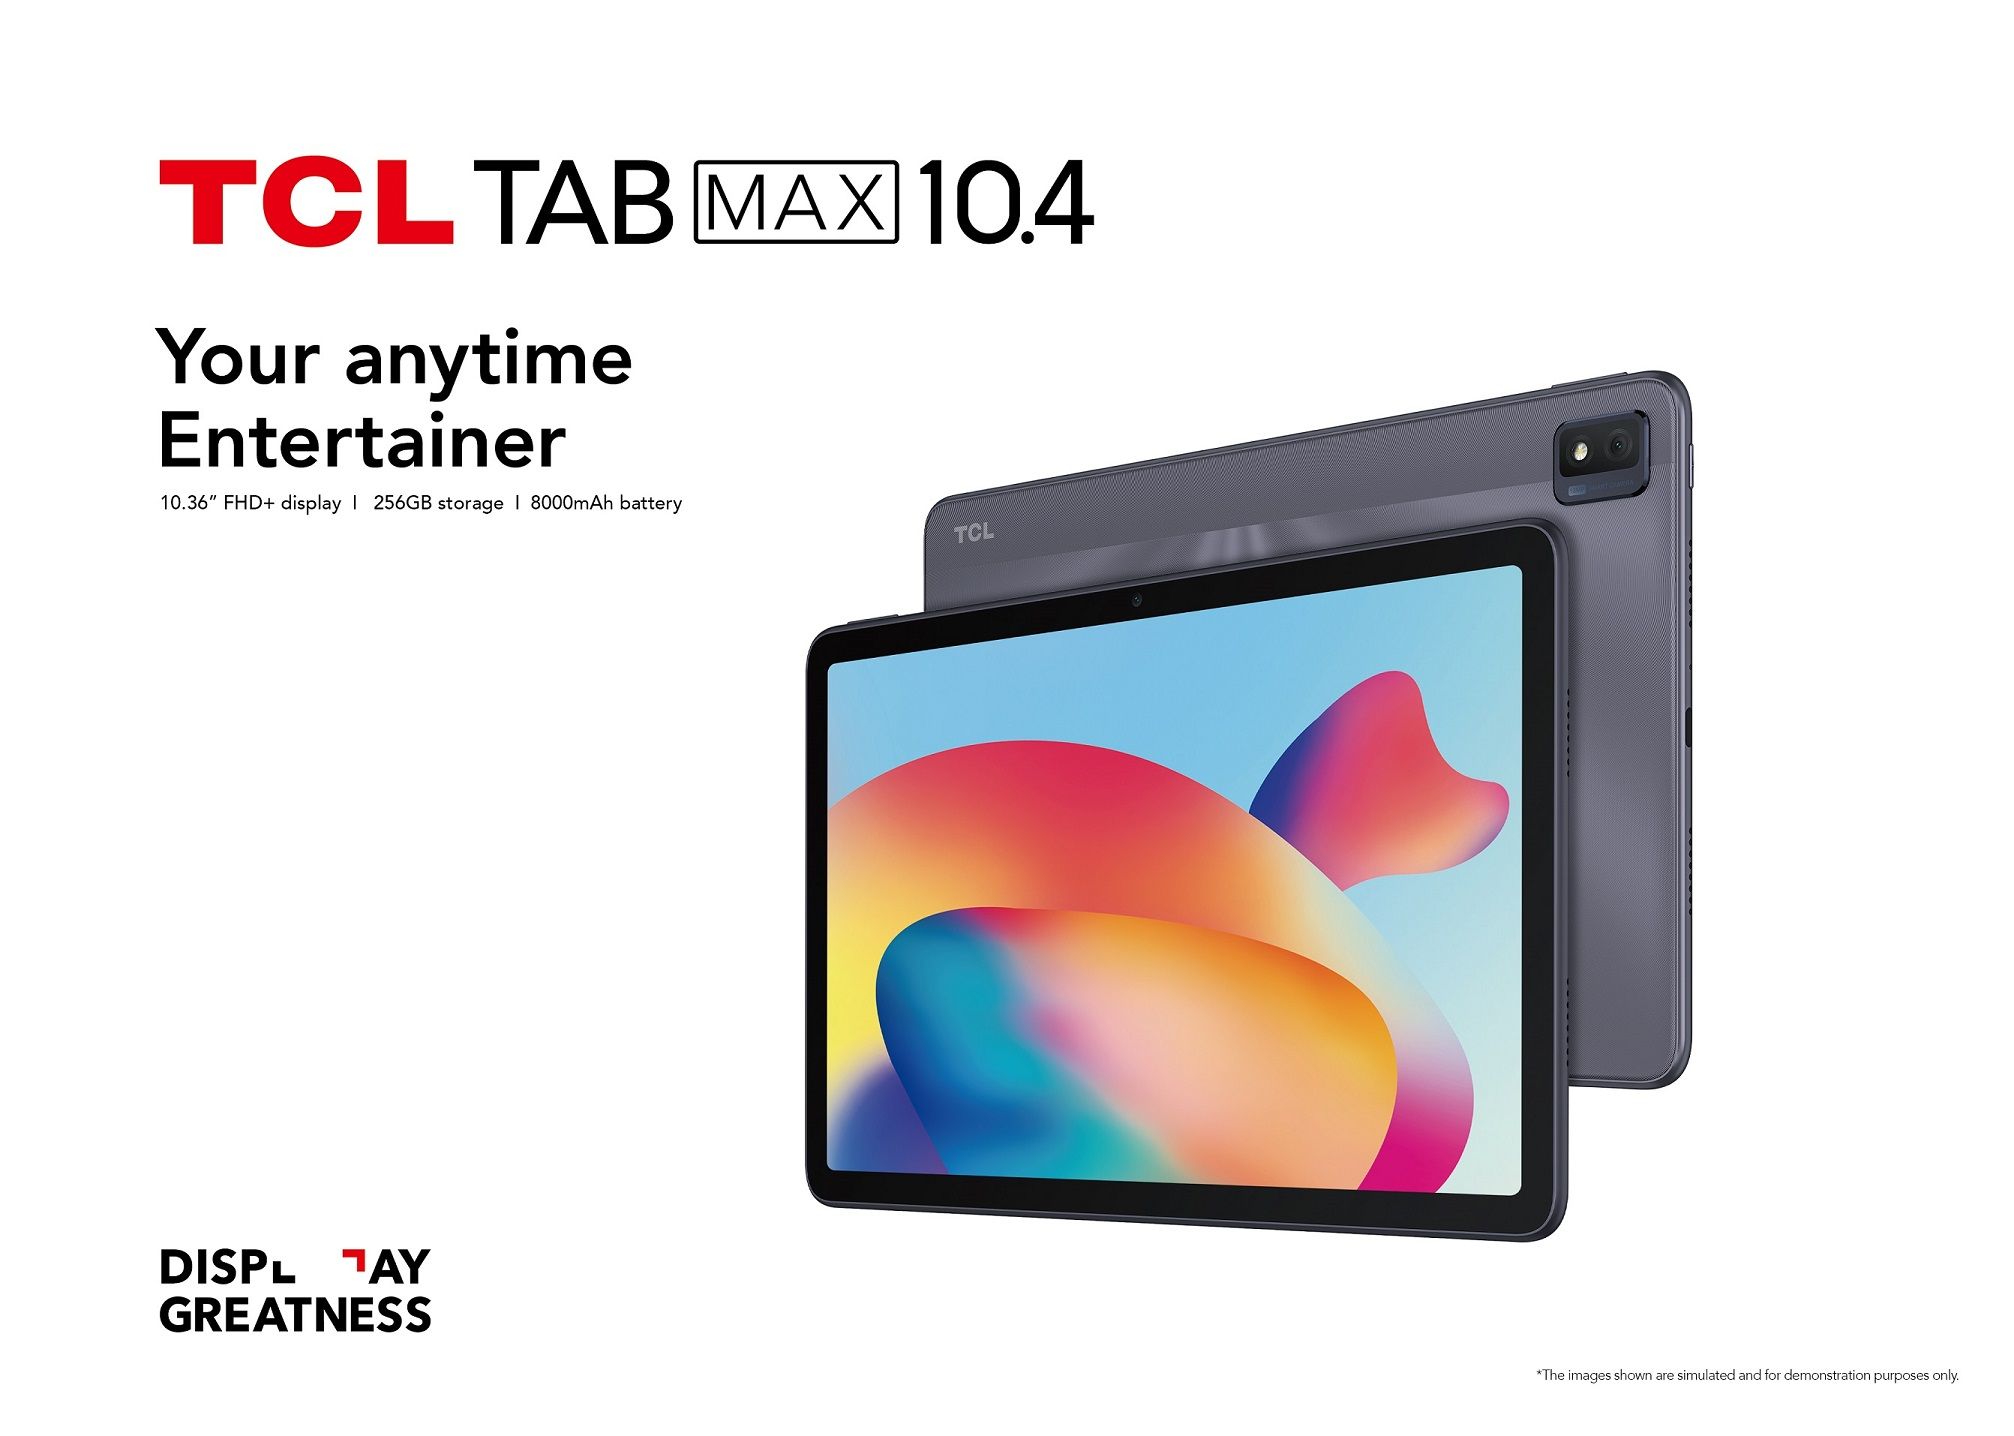 TCL lanza una tableta inteligente para potenciar la creatividad, la productividad y el entretenimiento